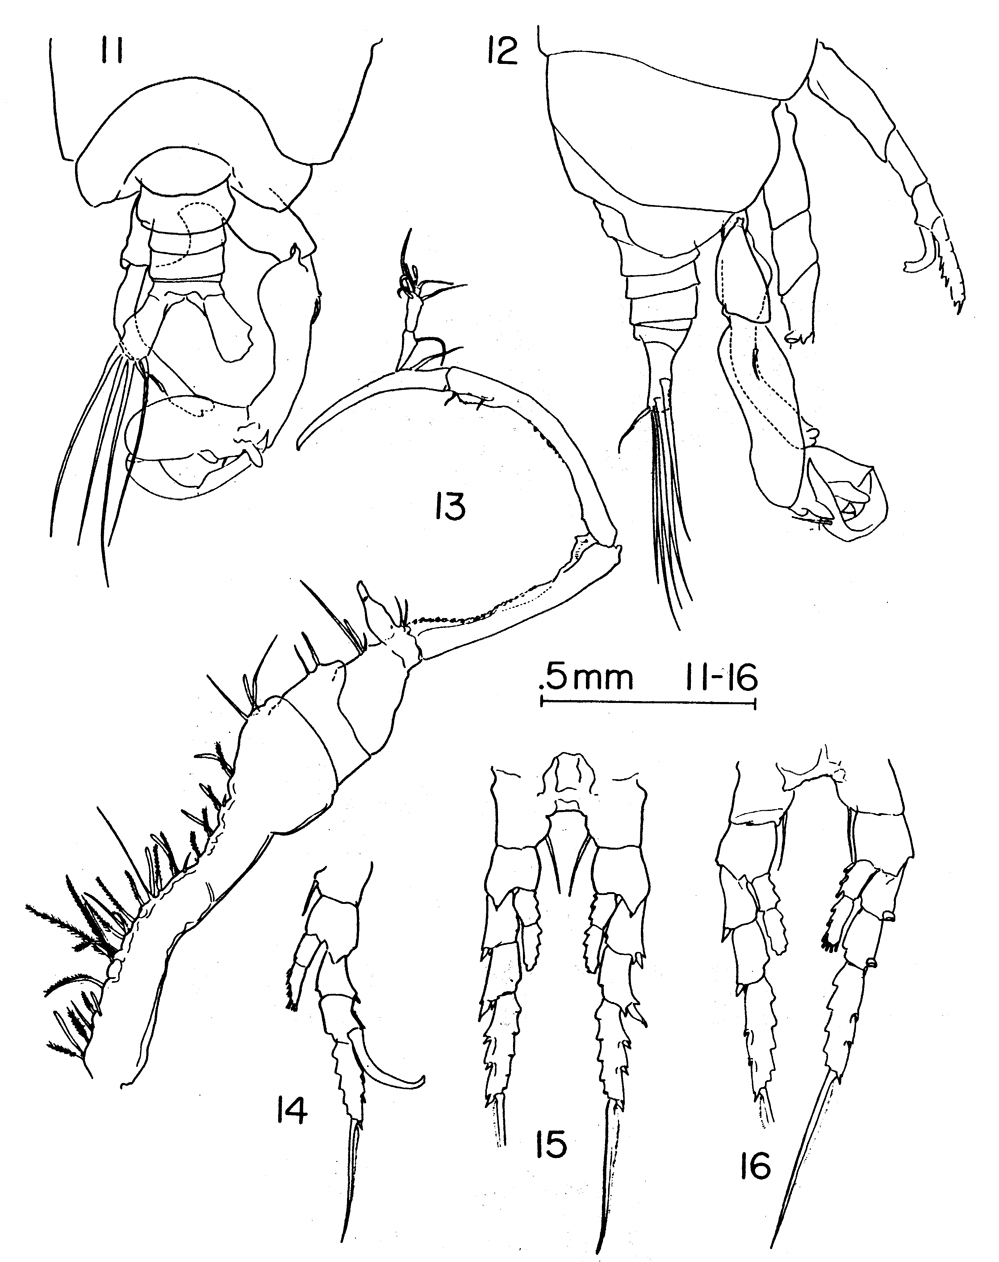 Species Labidocera barbadiensis - Plate 4 of morphological figures